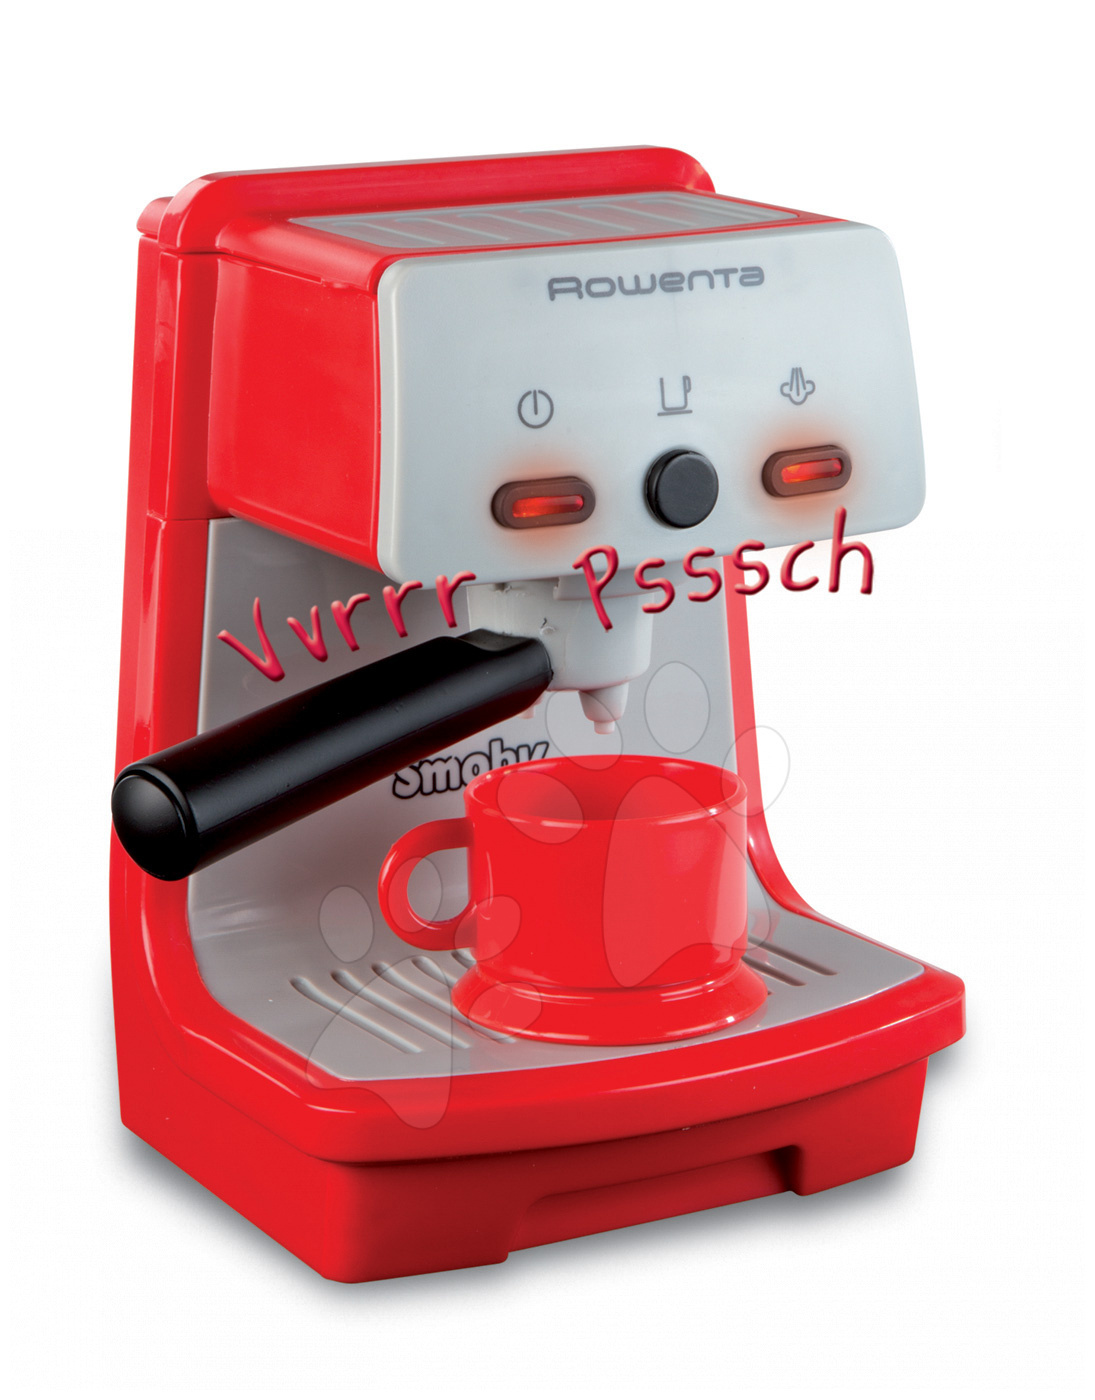 Spotrebiče do kuchynky - Kávovar Rowenta Espresso Smoby so zvukom a svetlom